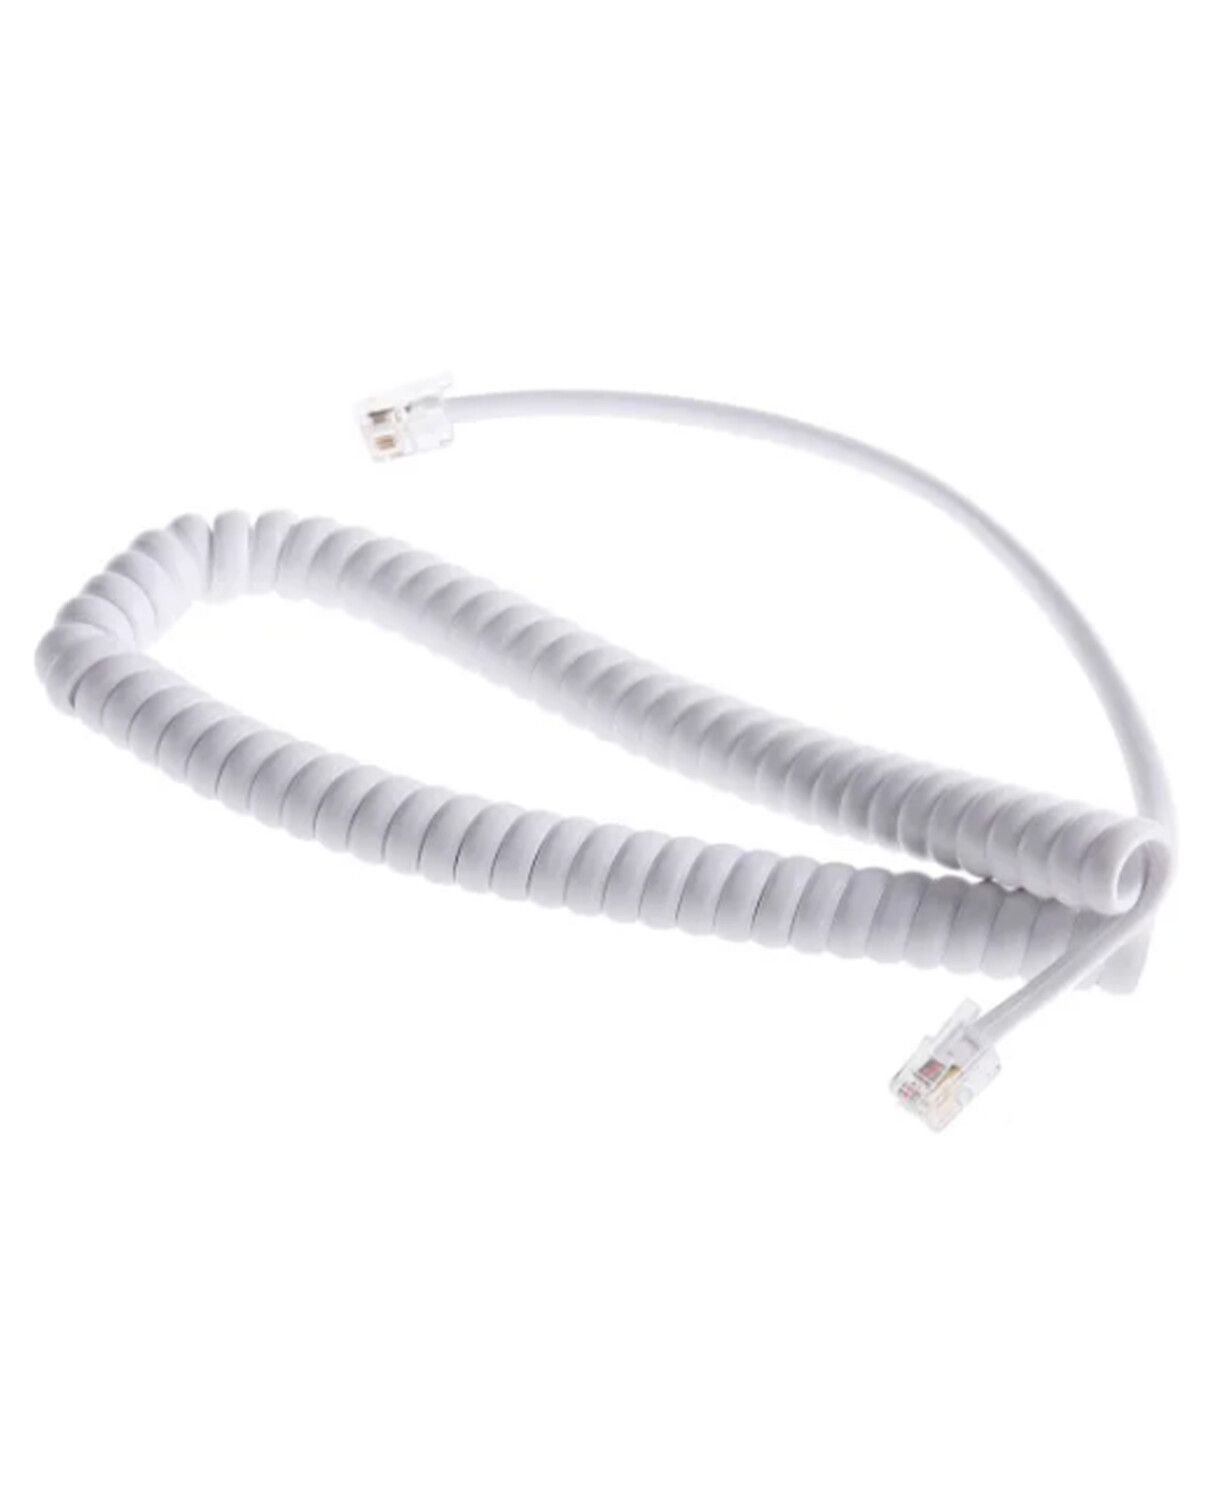 Achat/Vente Cordon Spiral Rj09 pour Combiné, Câbles téléphoniques